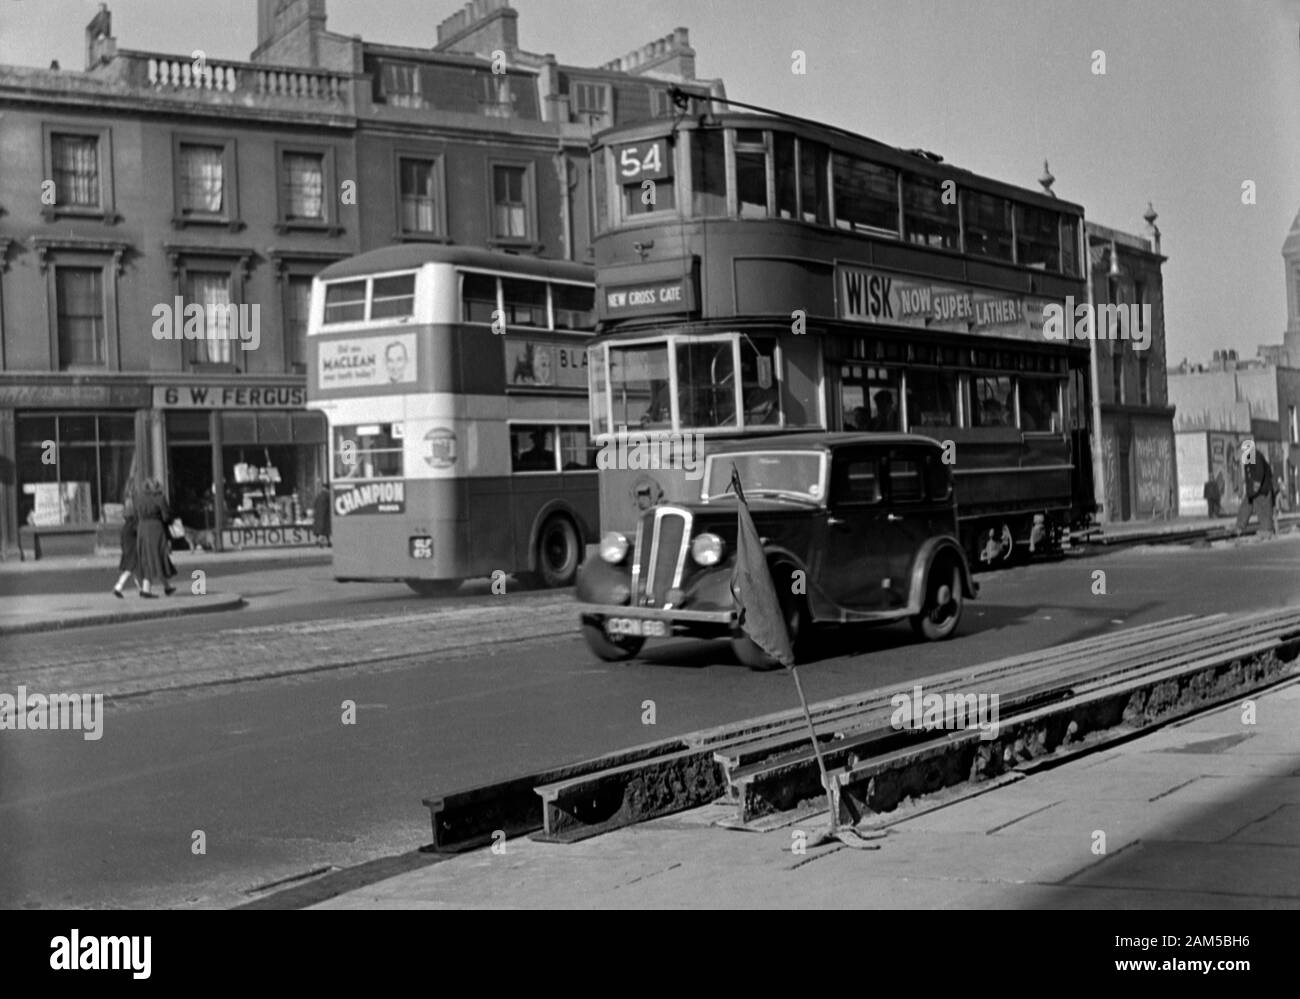 Londra prendete il tram n 575 0n Route 54 a New Cross Gate, risalente alla fine del 1940/inizio anni cinquanta Foto Stock